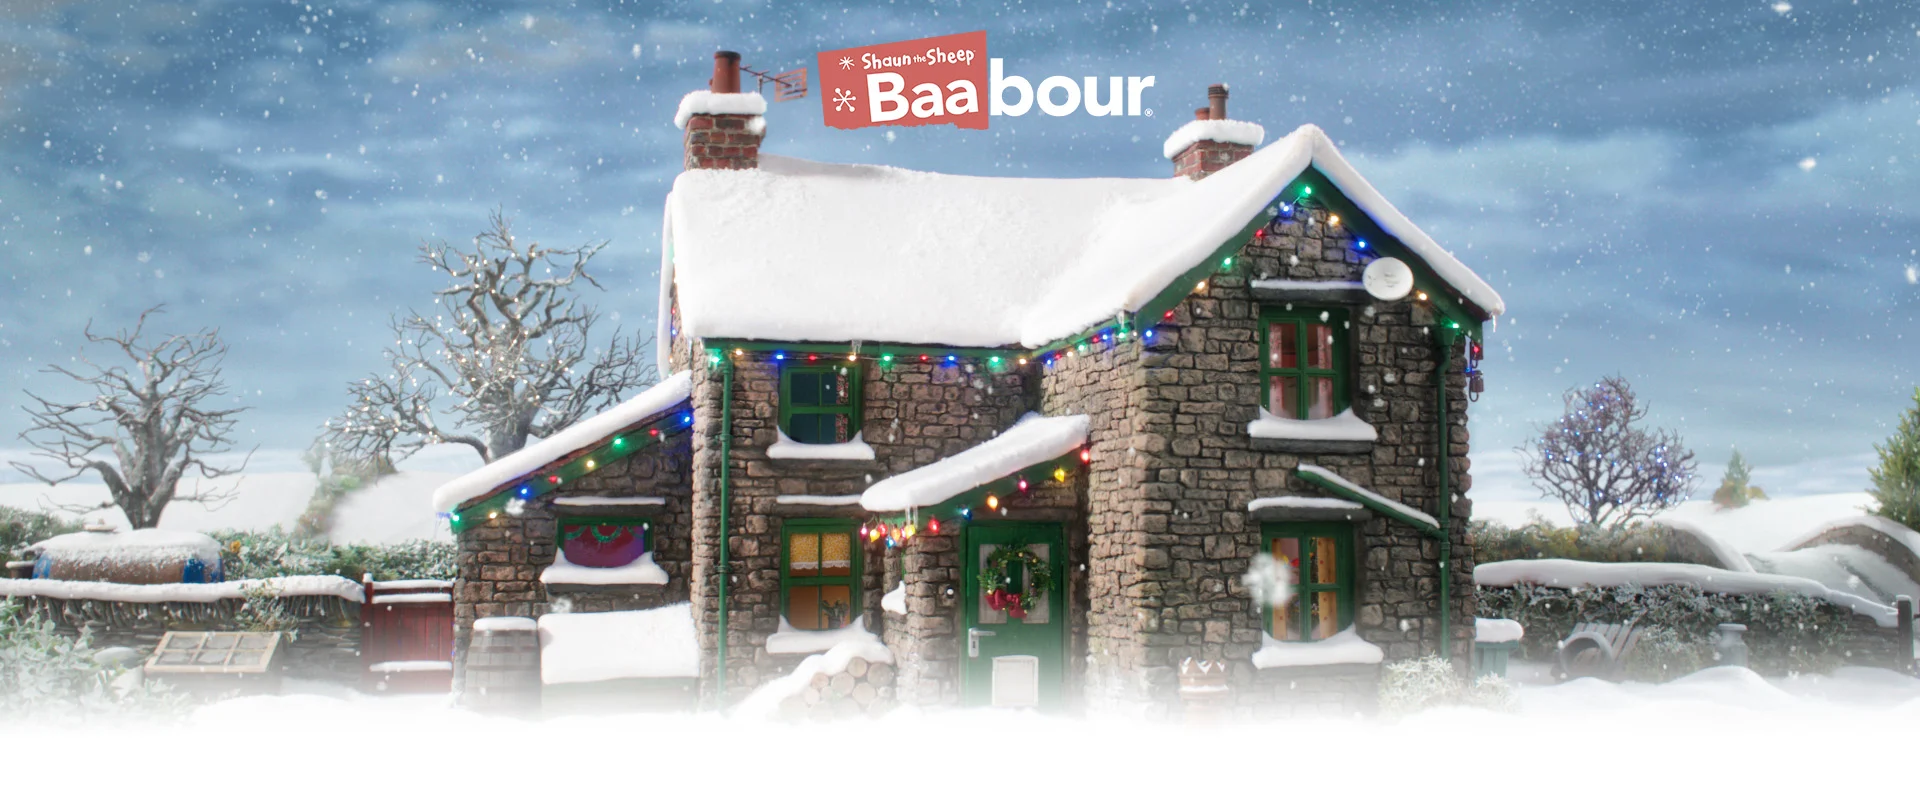 Baa-bour at Christmas | 2